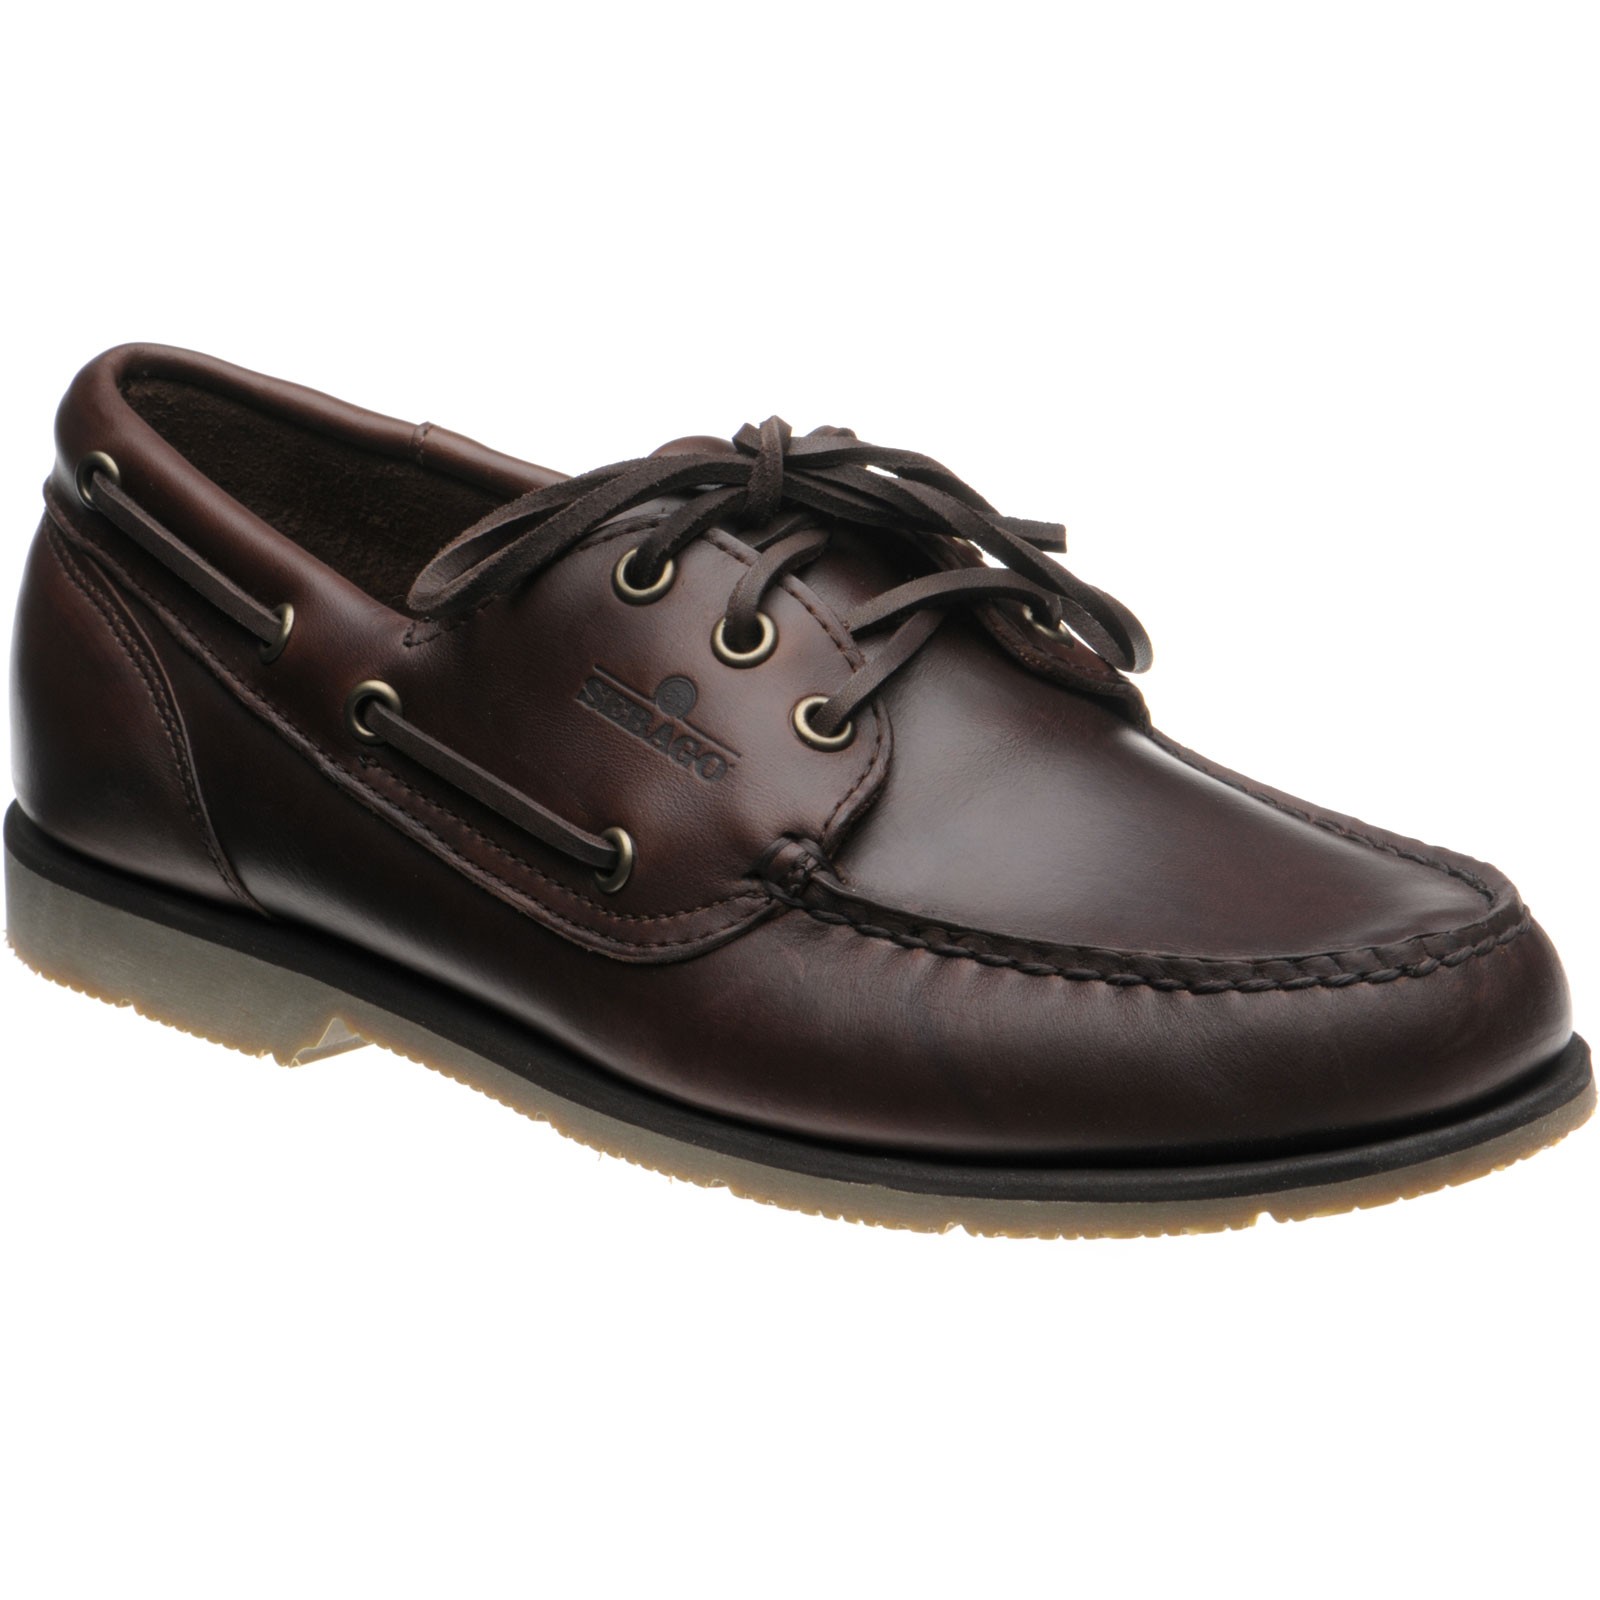 Sebago shoes | Sebago Sale | Foresider rubber-soled deck shoes in Dark ...